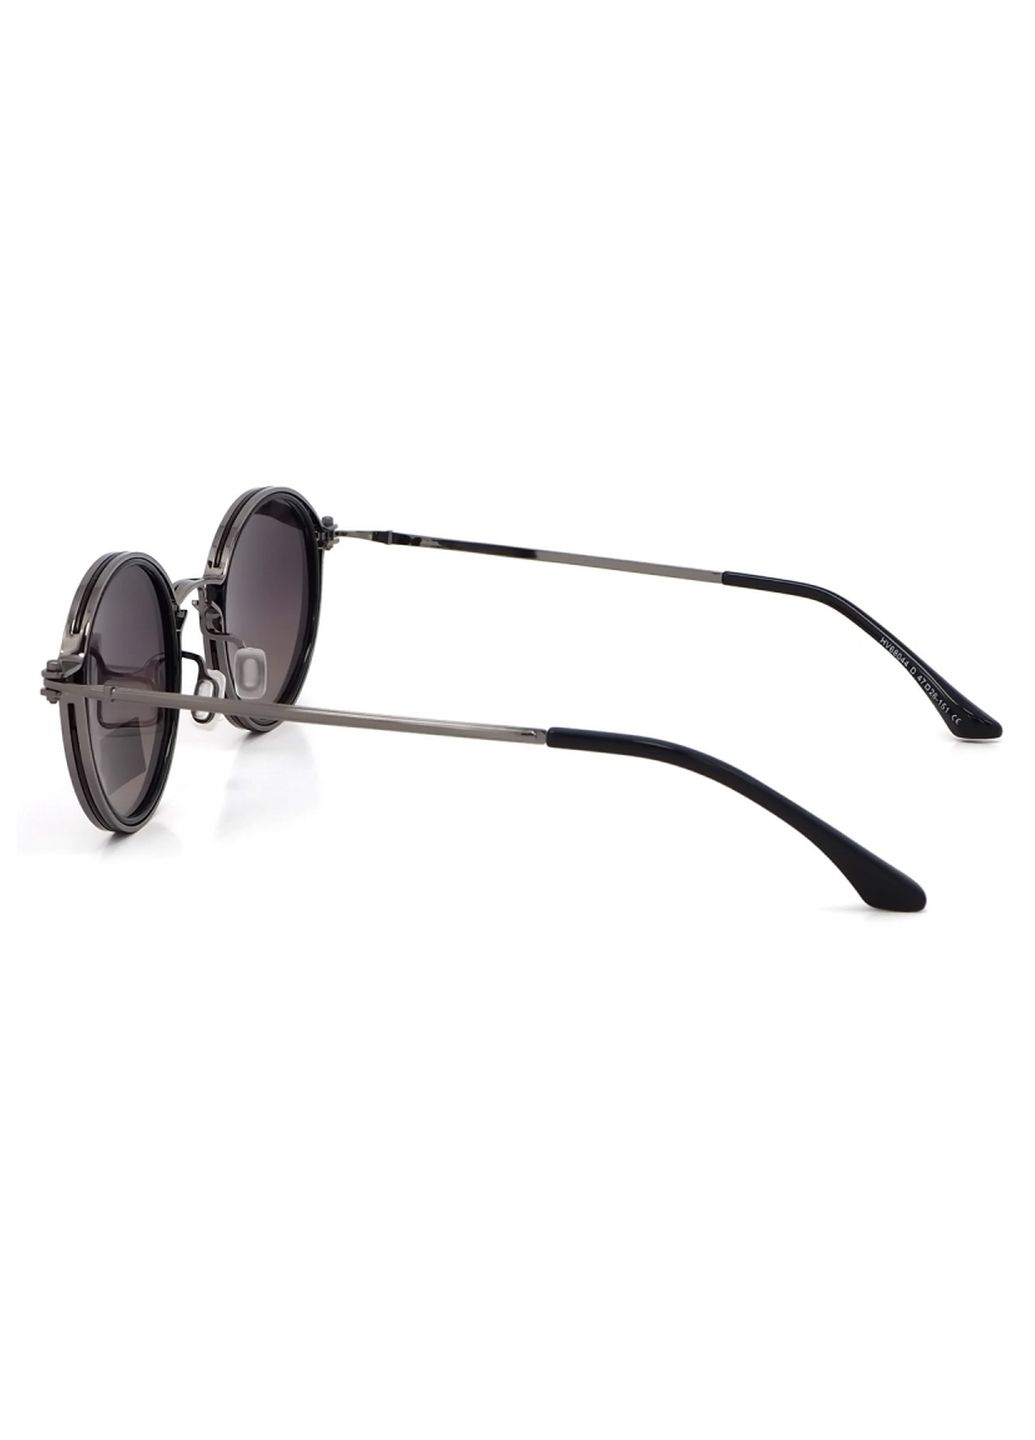 Купить Солнцезащитные очки c поляризацией HAVVS HV68044 170009 - Серый в интернет-магазине